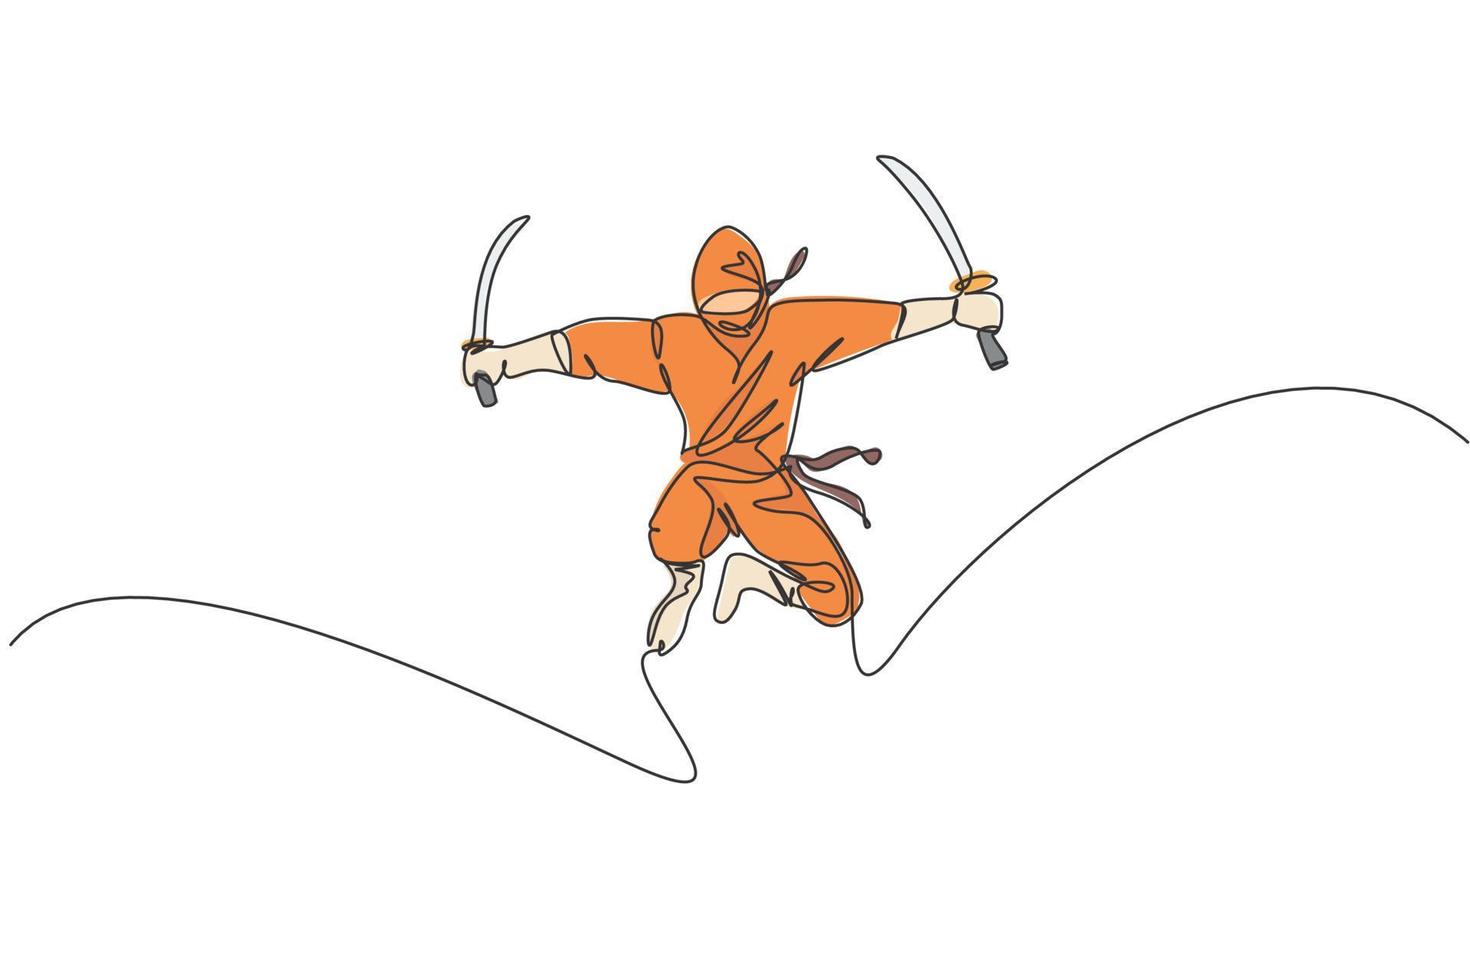 dibujo de una sola línea continua del joven guerrero ninja de la cultura japonesa con traje de máscara con pose de ataque de salto. concepto de samurai de lucha de artes marciales. ilustración de vector de diseño de dibujo de una línea de moda